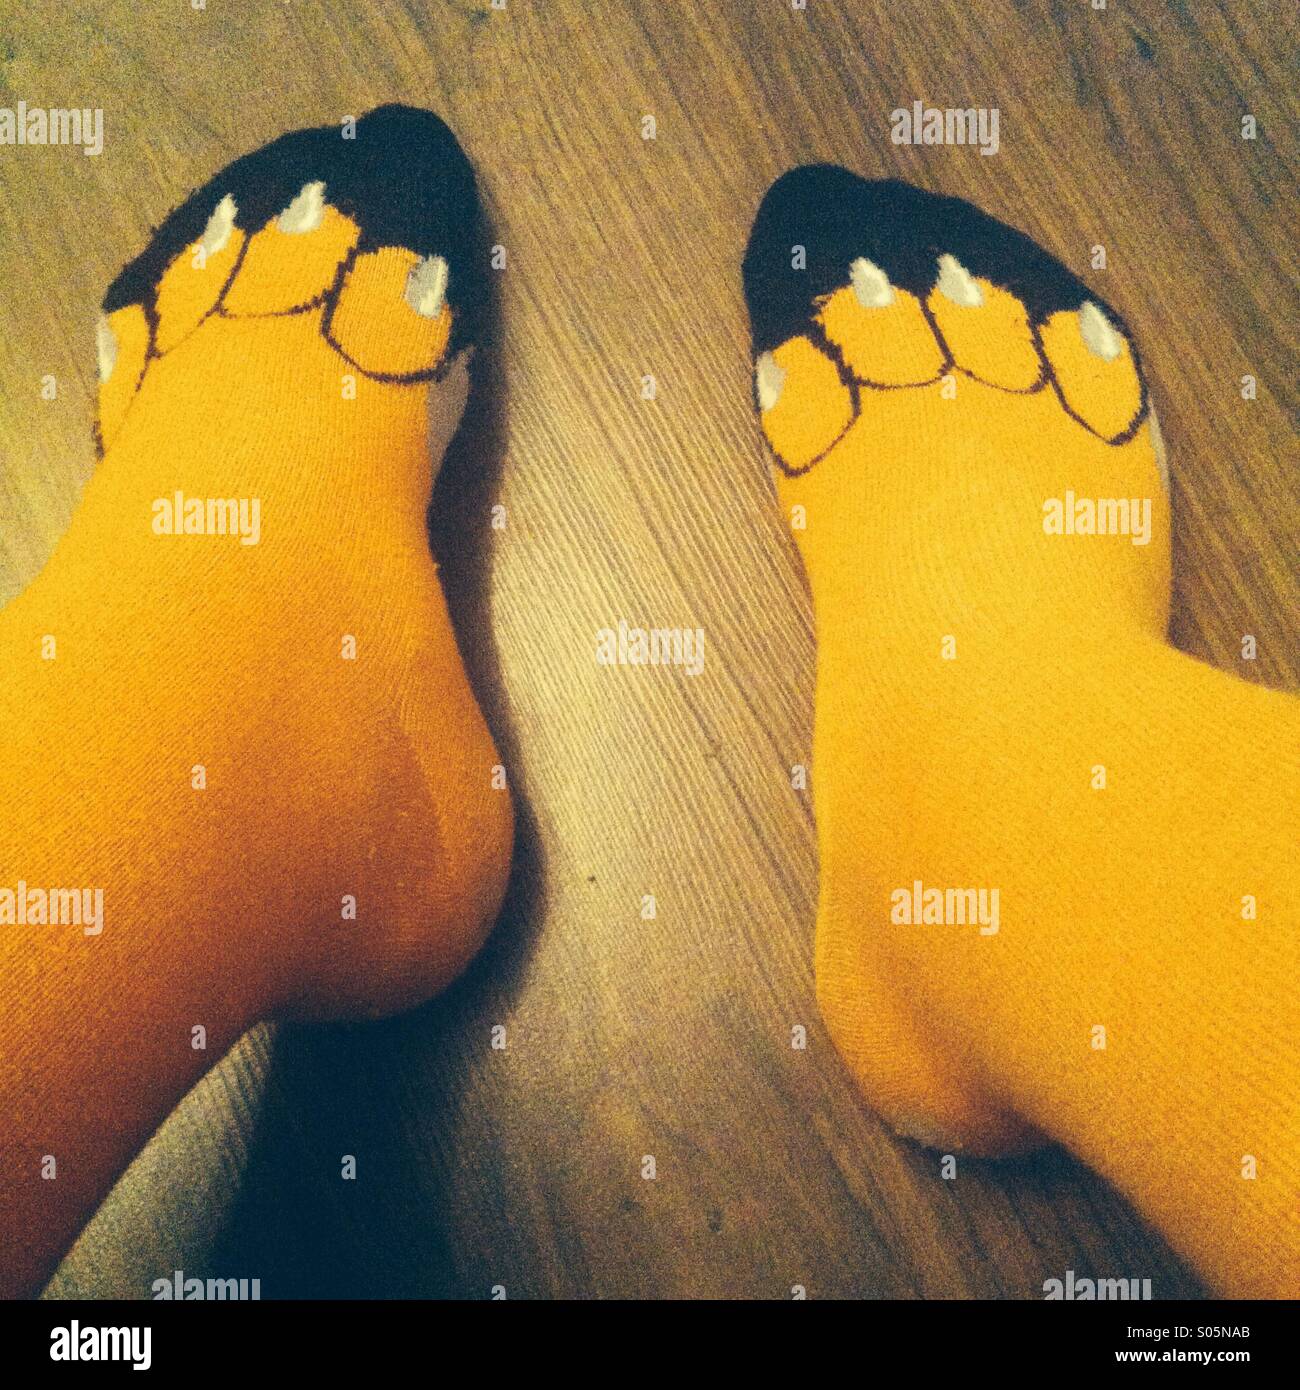 Meias Sólido  Toe socks, Socks, Socks photoshoot